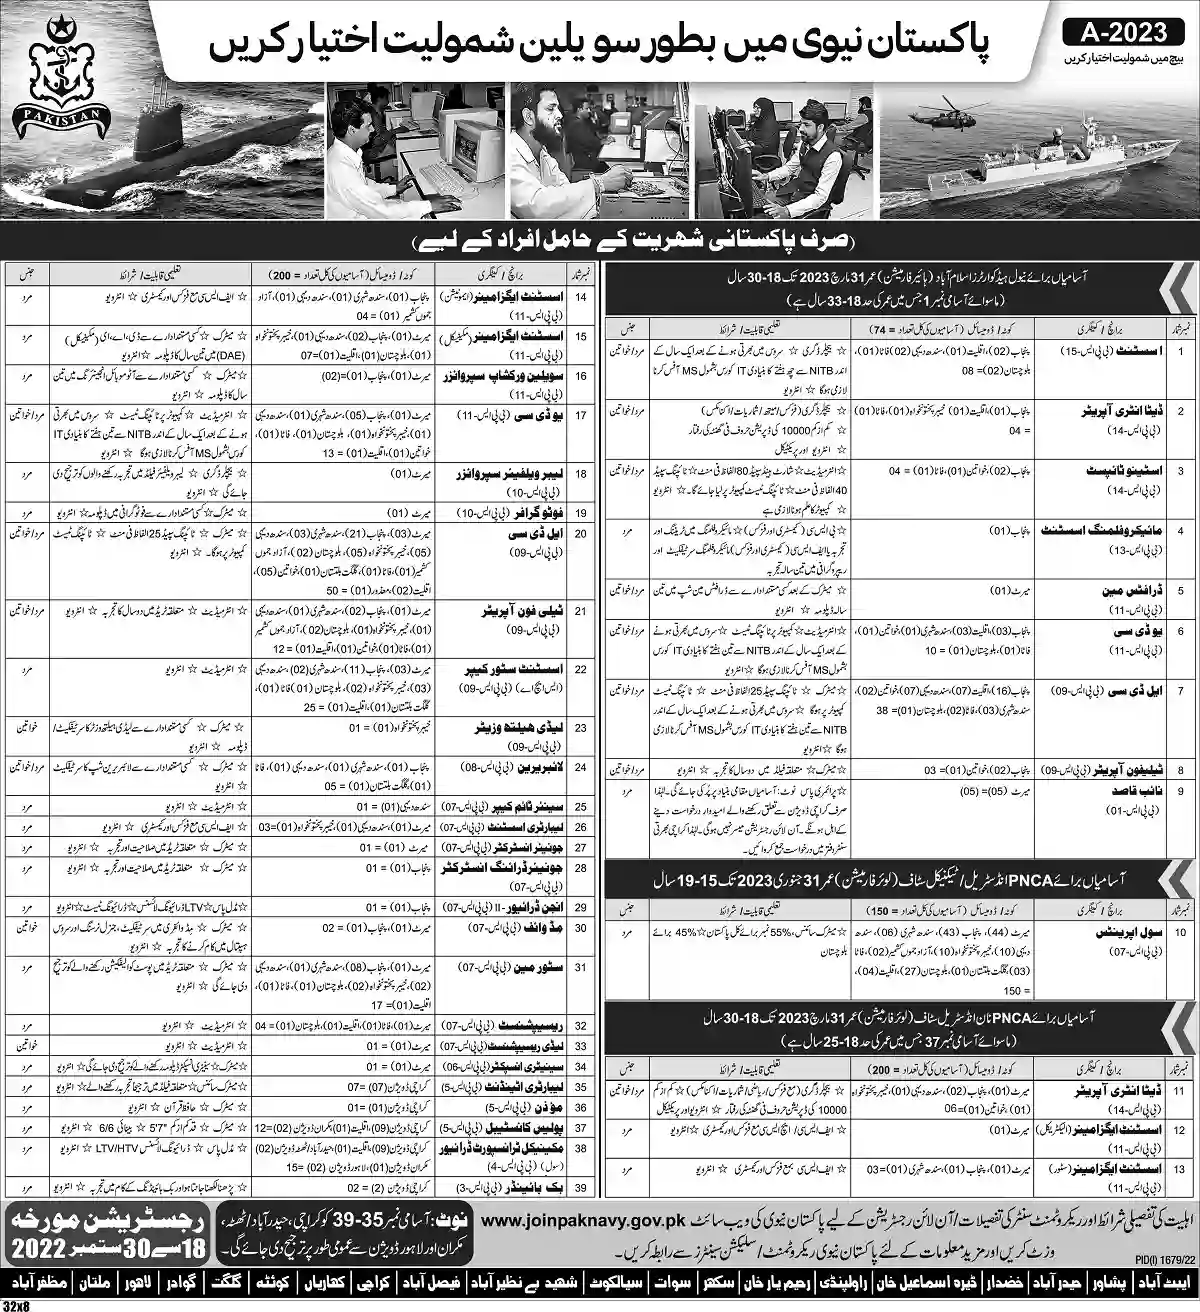 Join Pak Navy Civilian Jobs 2022 Online Registration www.joinpaknavy.gov.pk